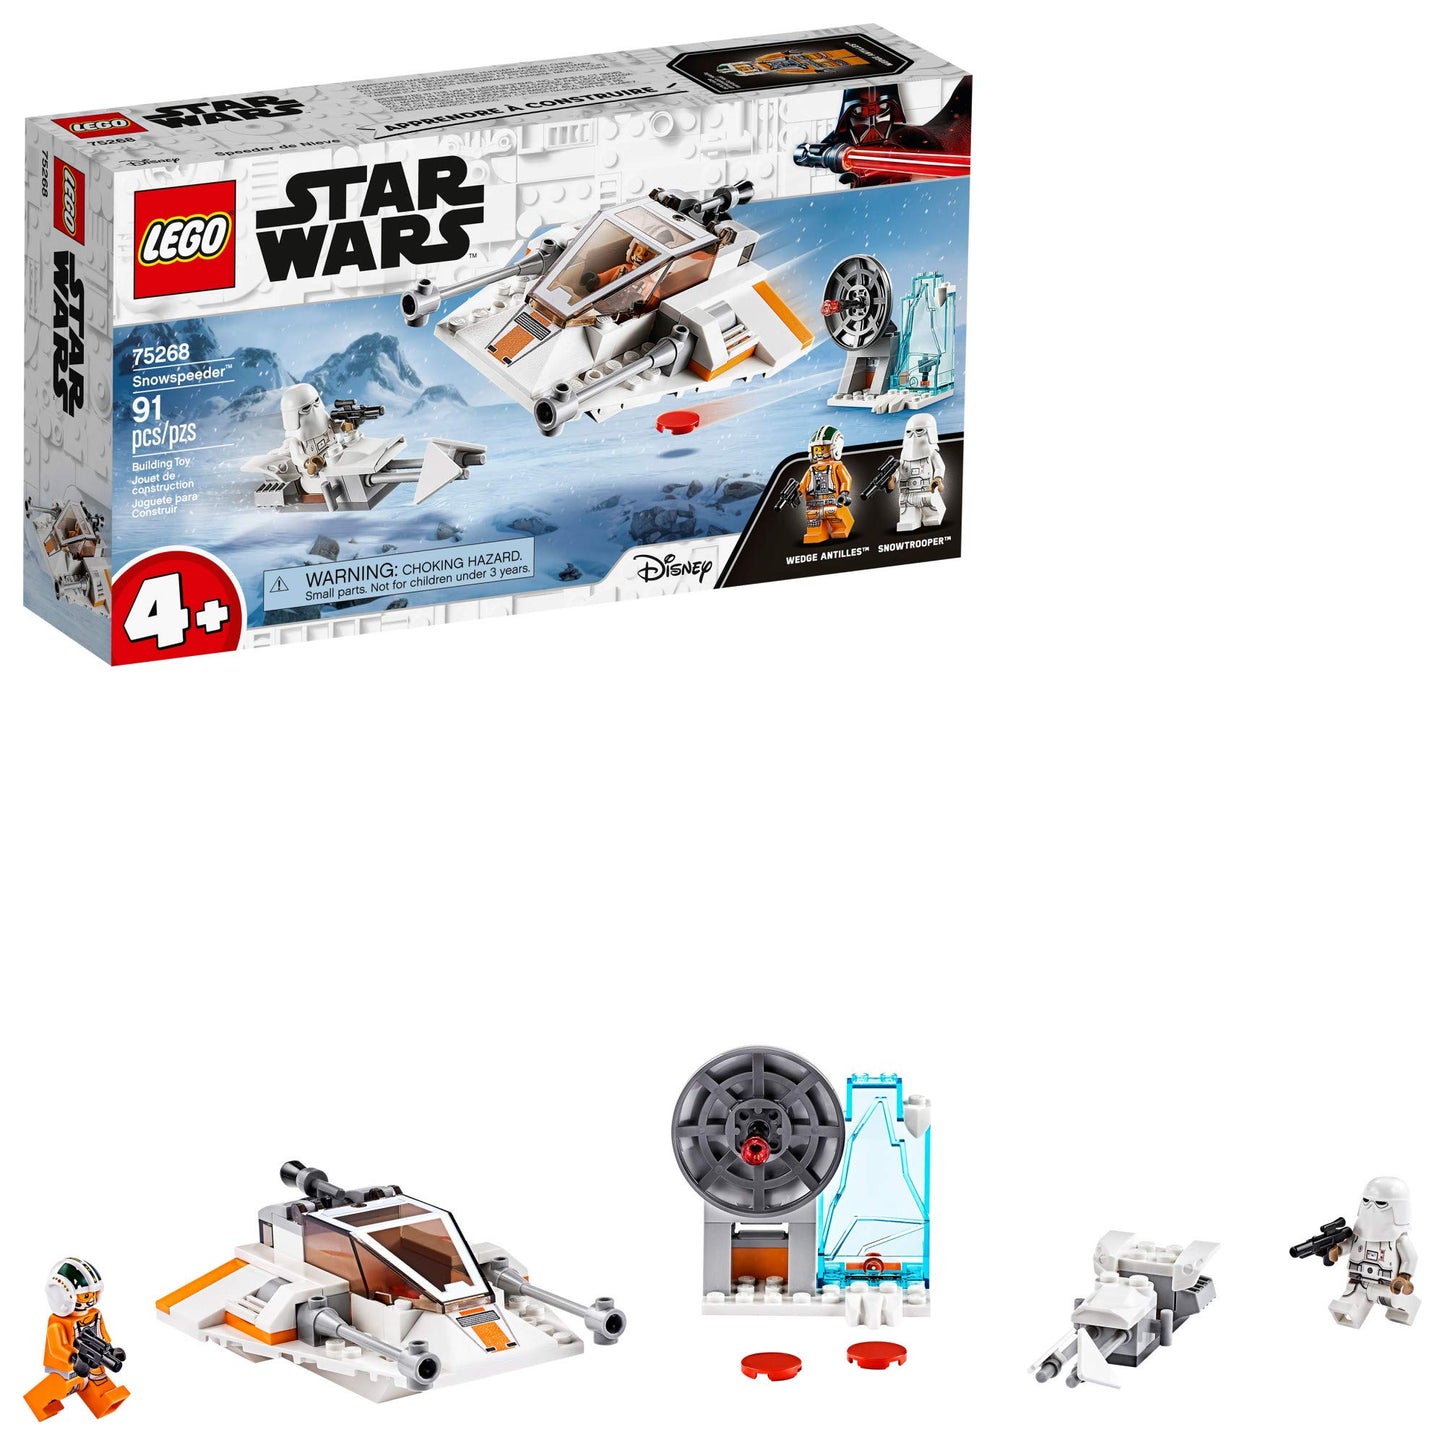 LEGO Star Wars Snowspeeder 75268